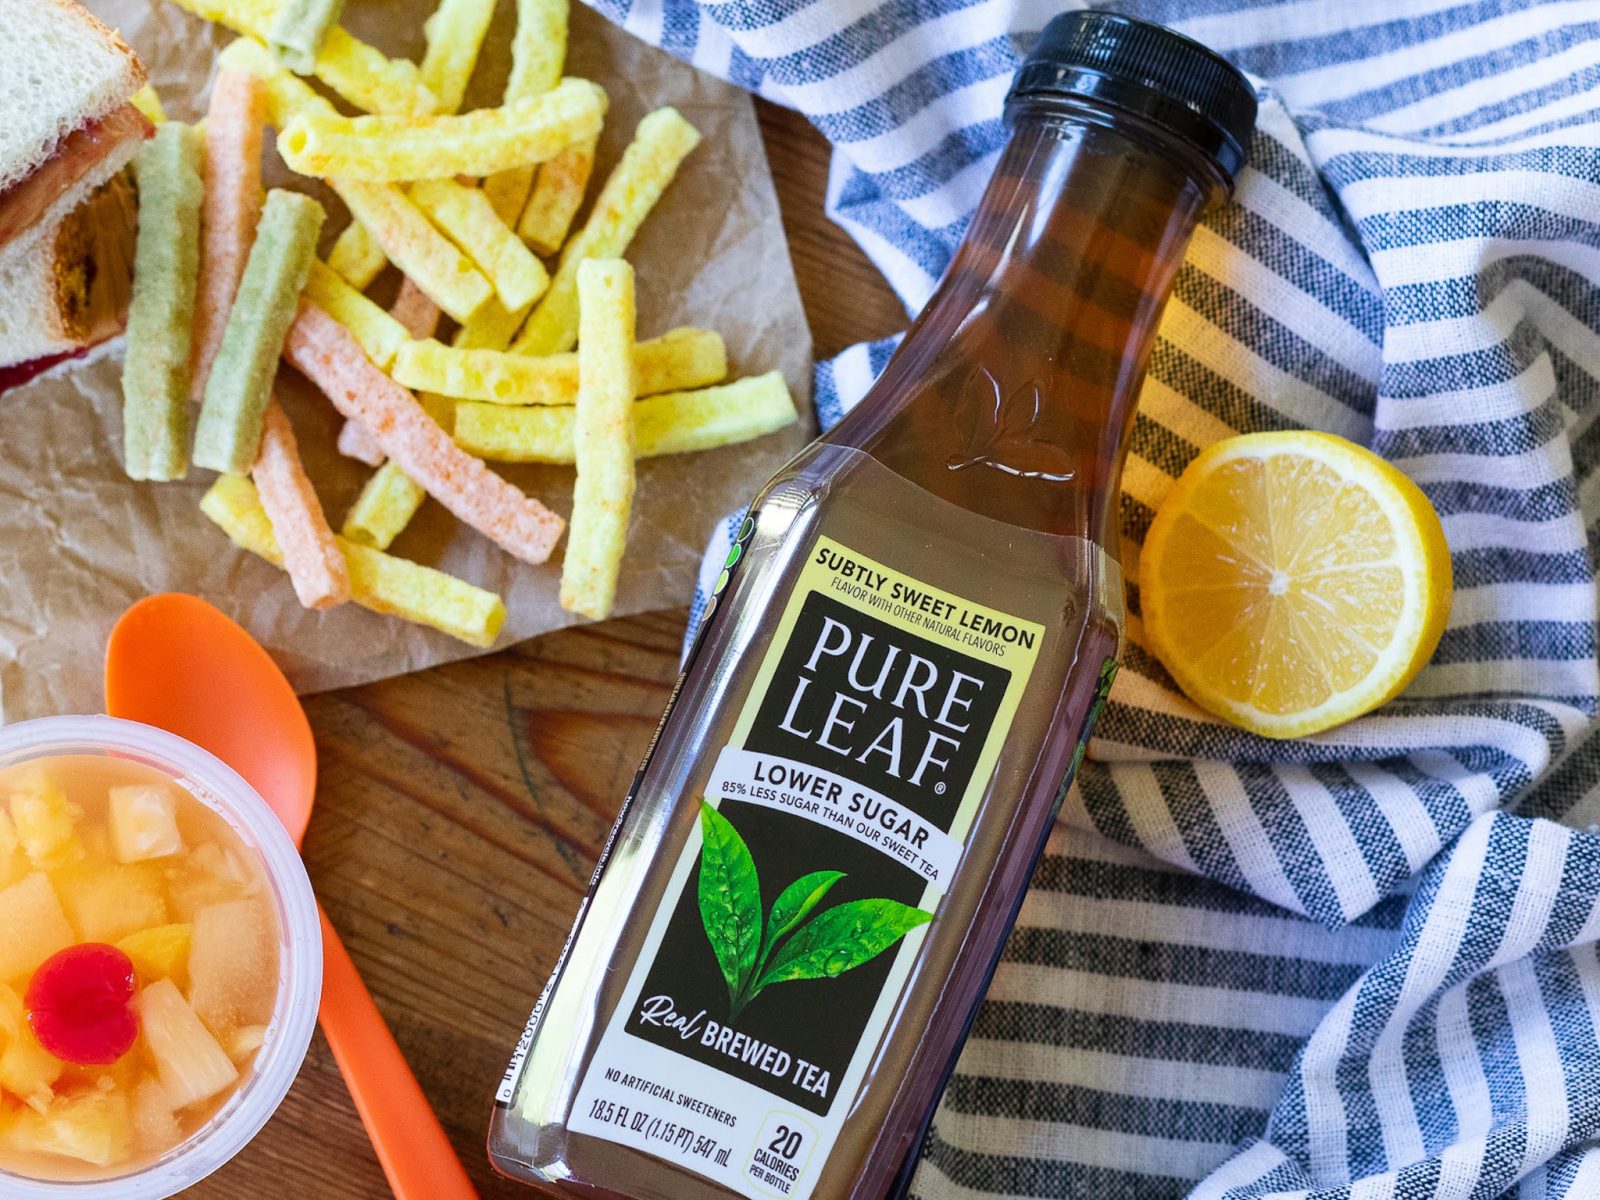 Get A FREE Bottle Of Subtly Sweet Pure Leaf Tea At Publix